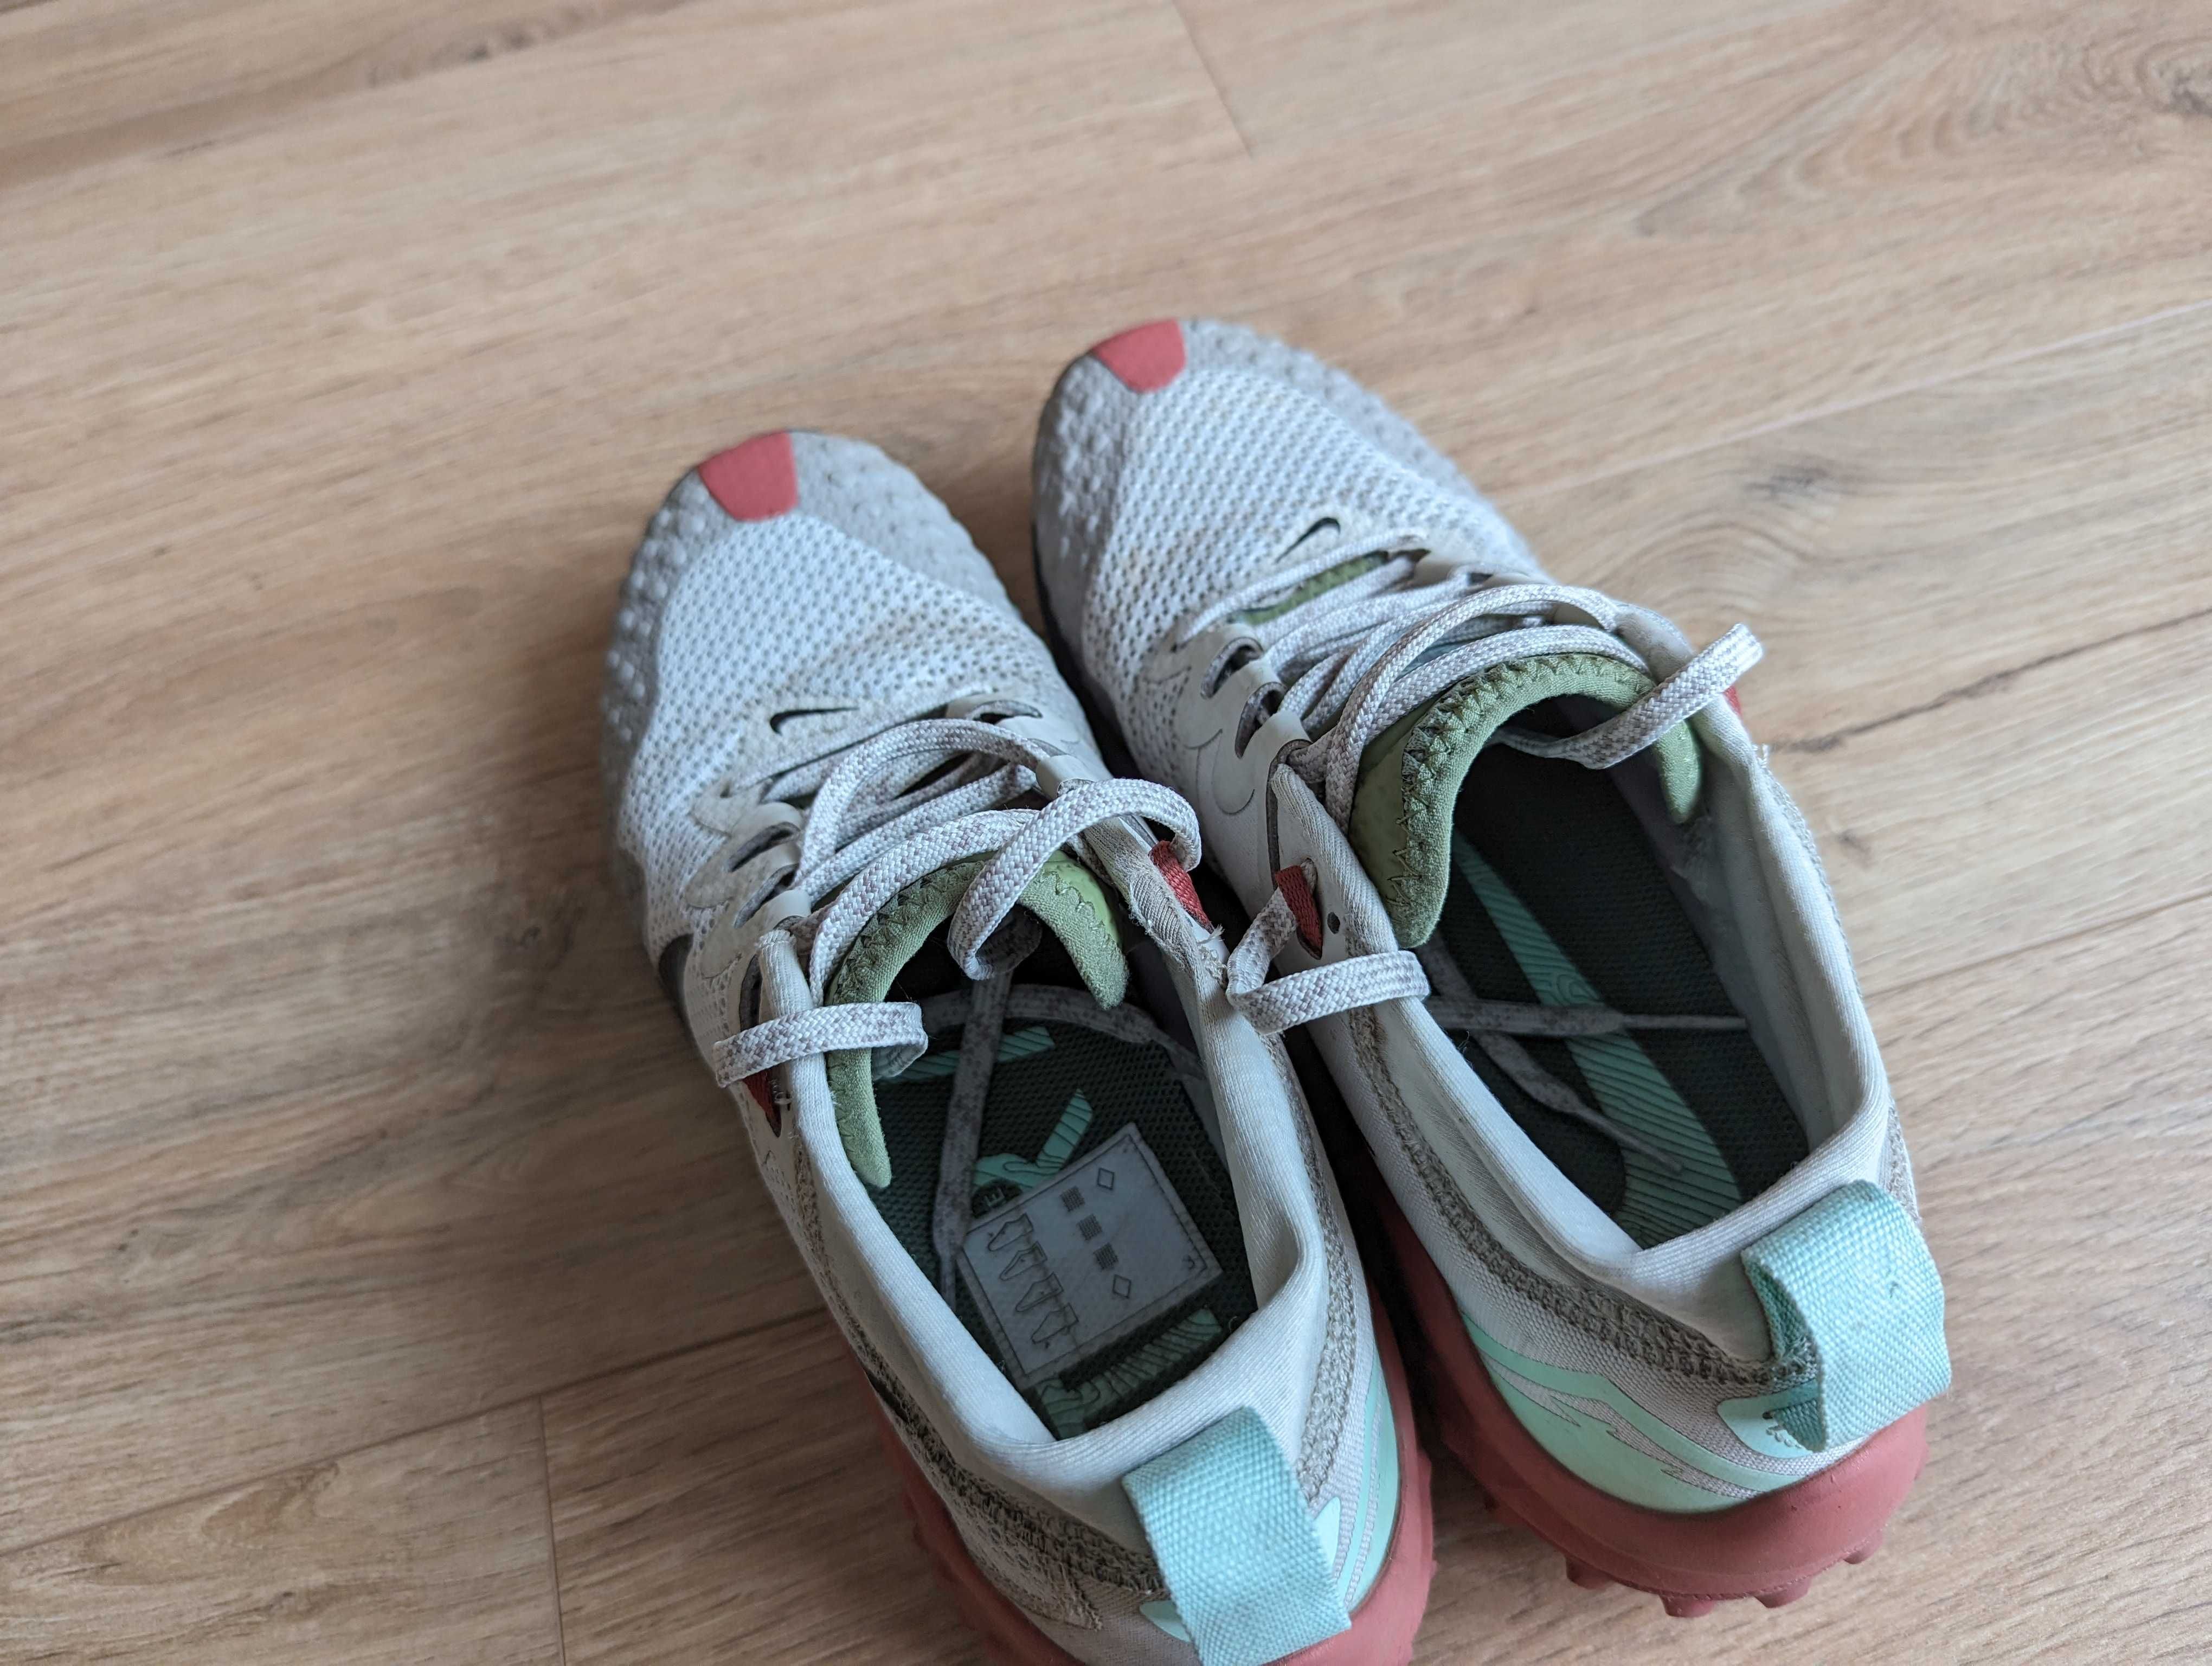 Damskie buty biegowe Nike Wildhorse 7 r. 40,5 (26 cm) przebieg 80 km